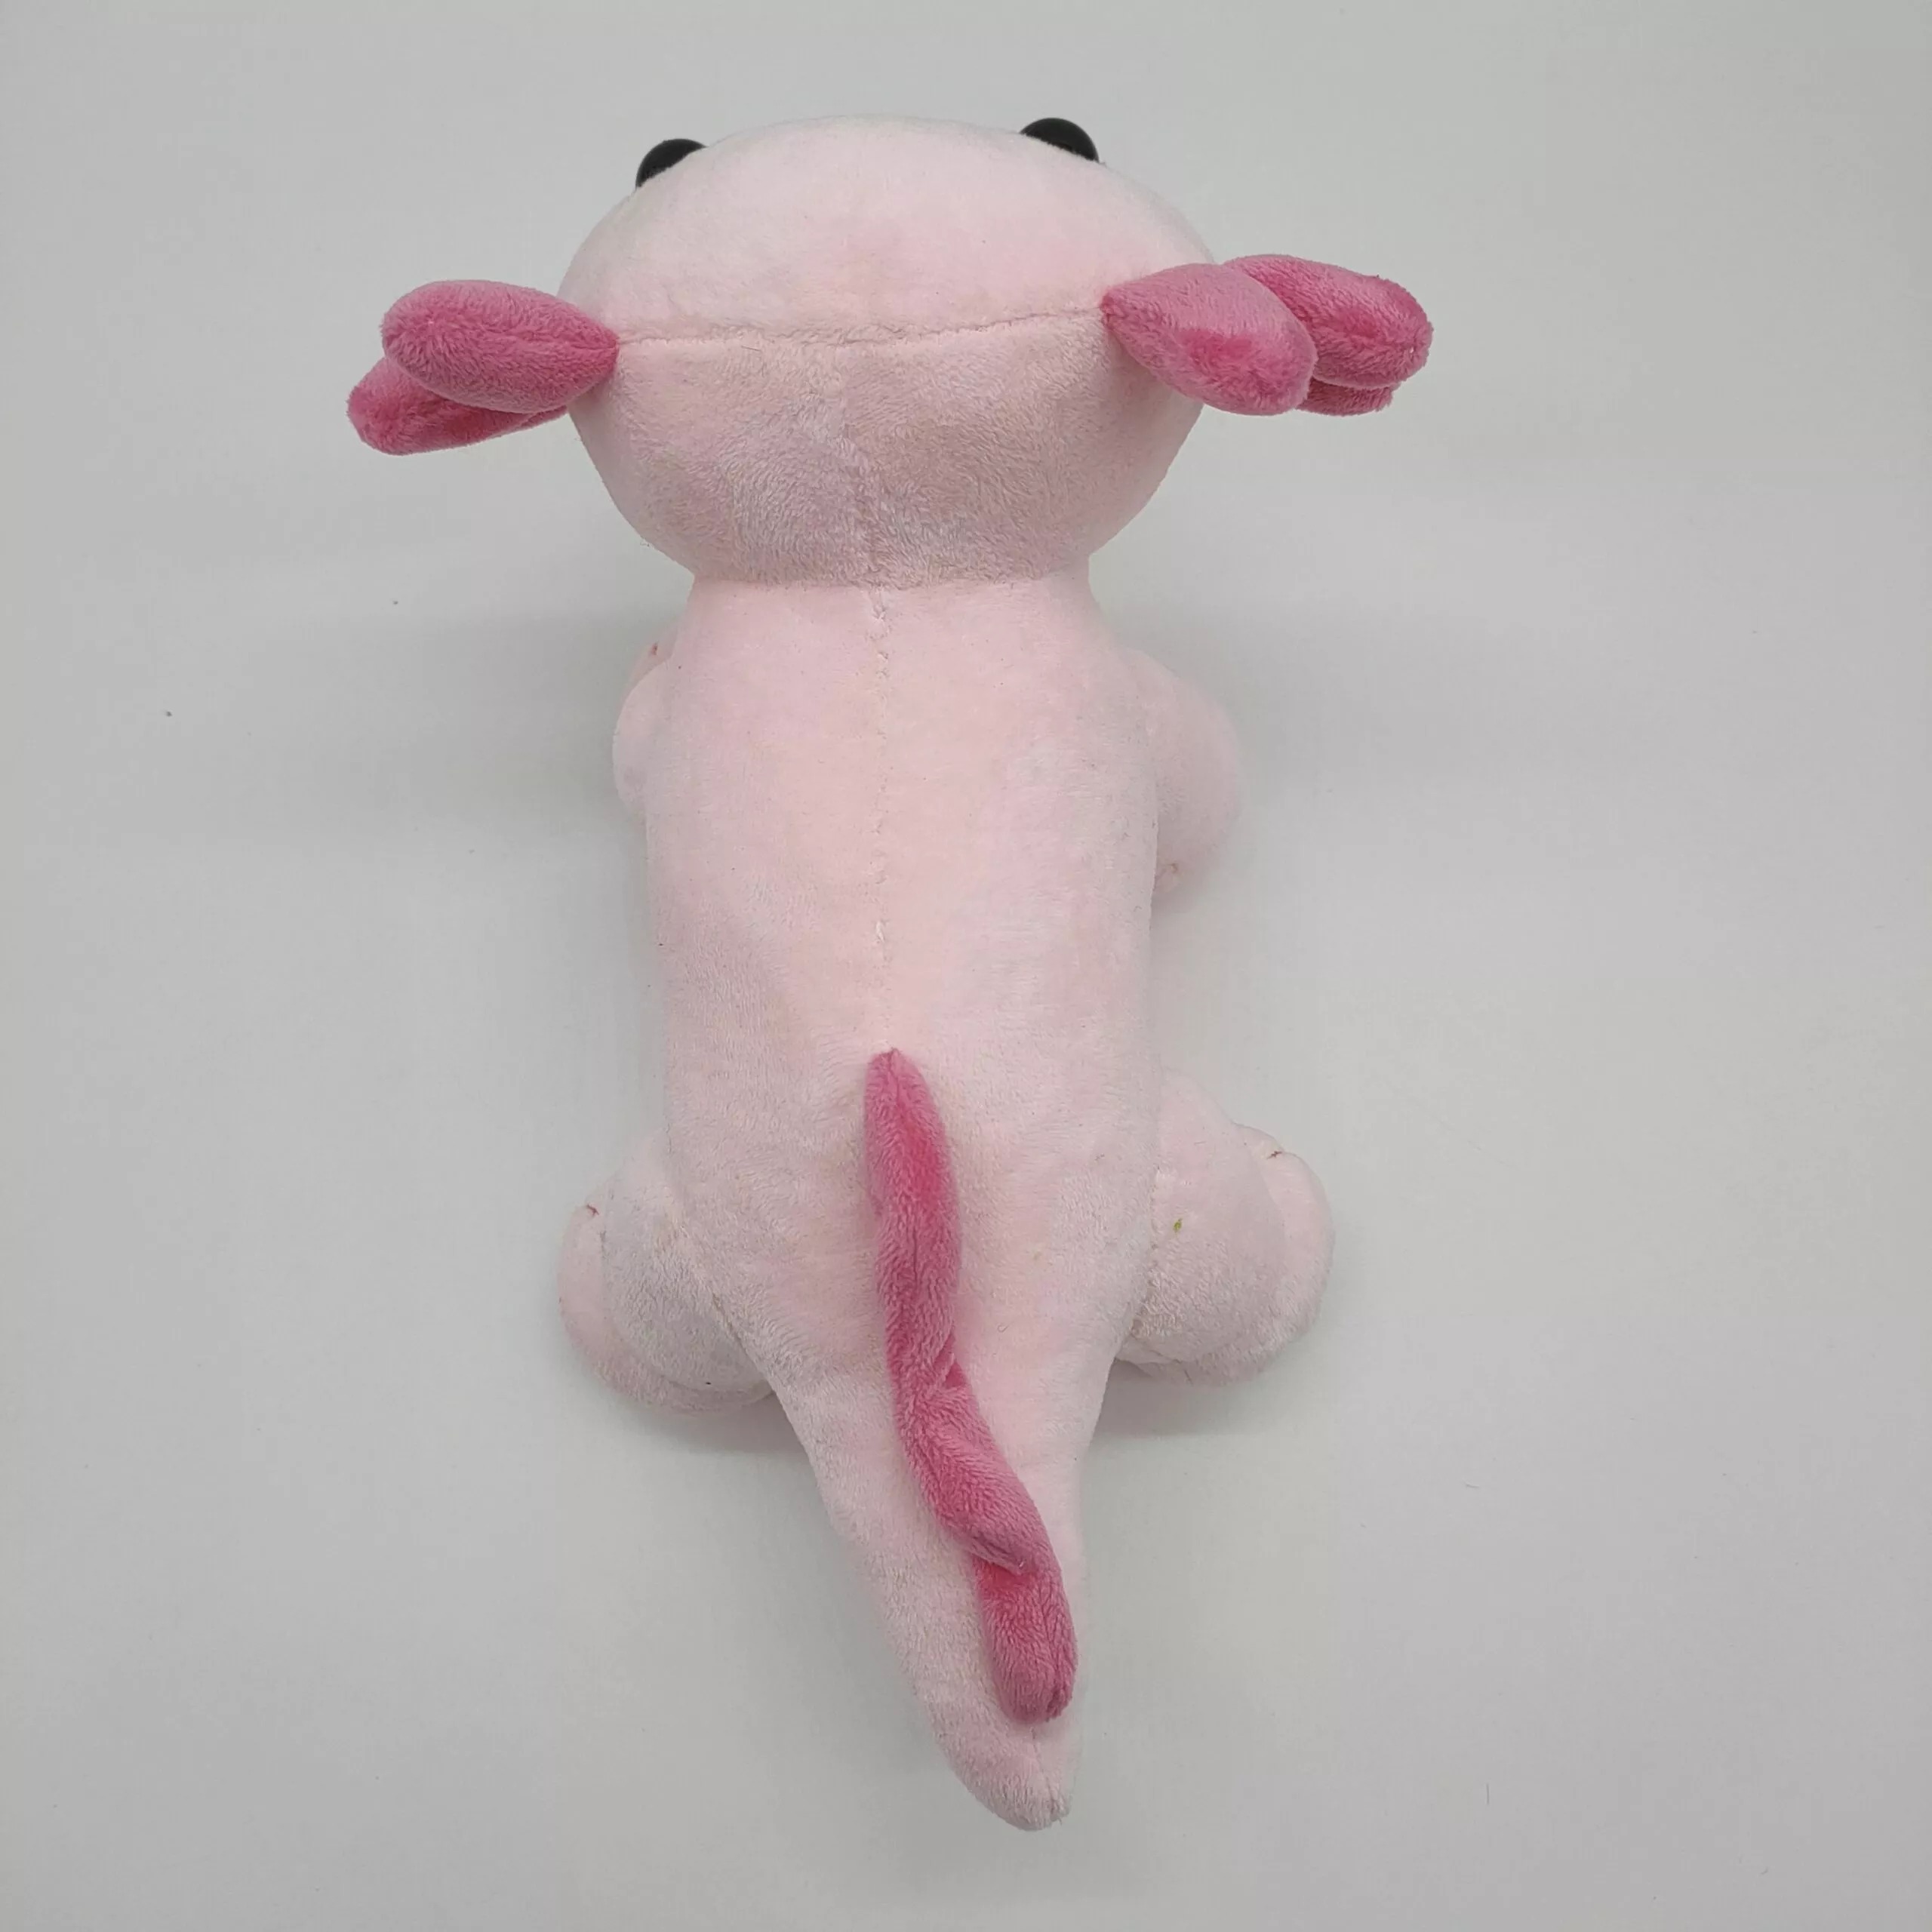 32455366 scaled Pelúcia Kawaii axolotl brinquedo de pelúcia animal de pelúcia axolotl plushies figura boneca dos desenhos animados animal macio rosa axolotl bonecas recheadas para presentes das crianças